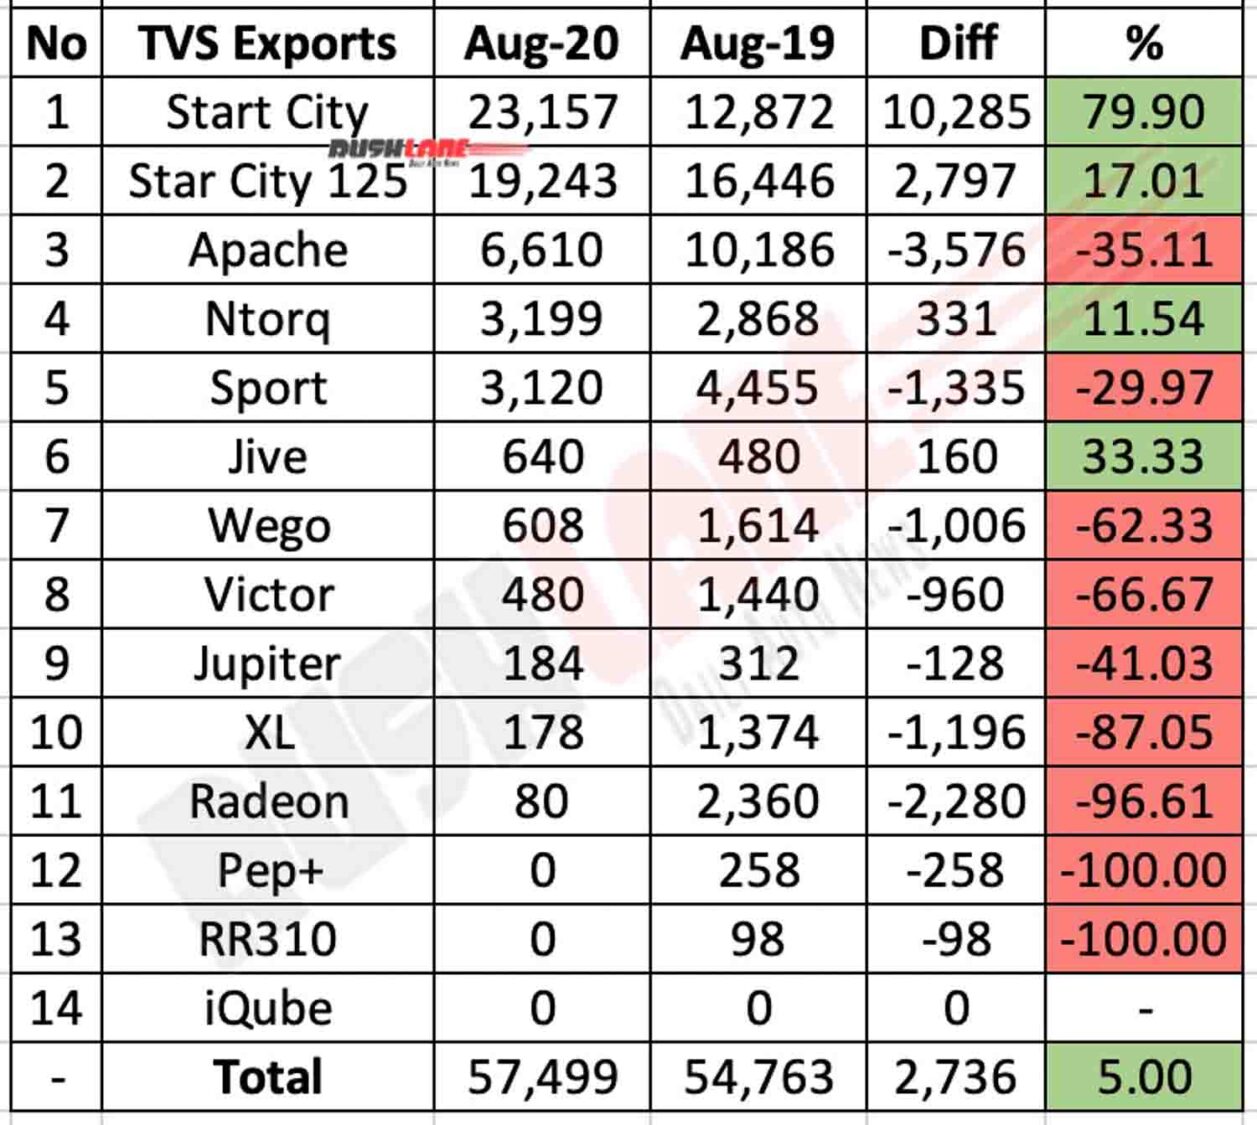 TVS Exports Aug 2020